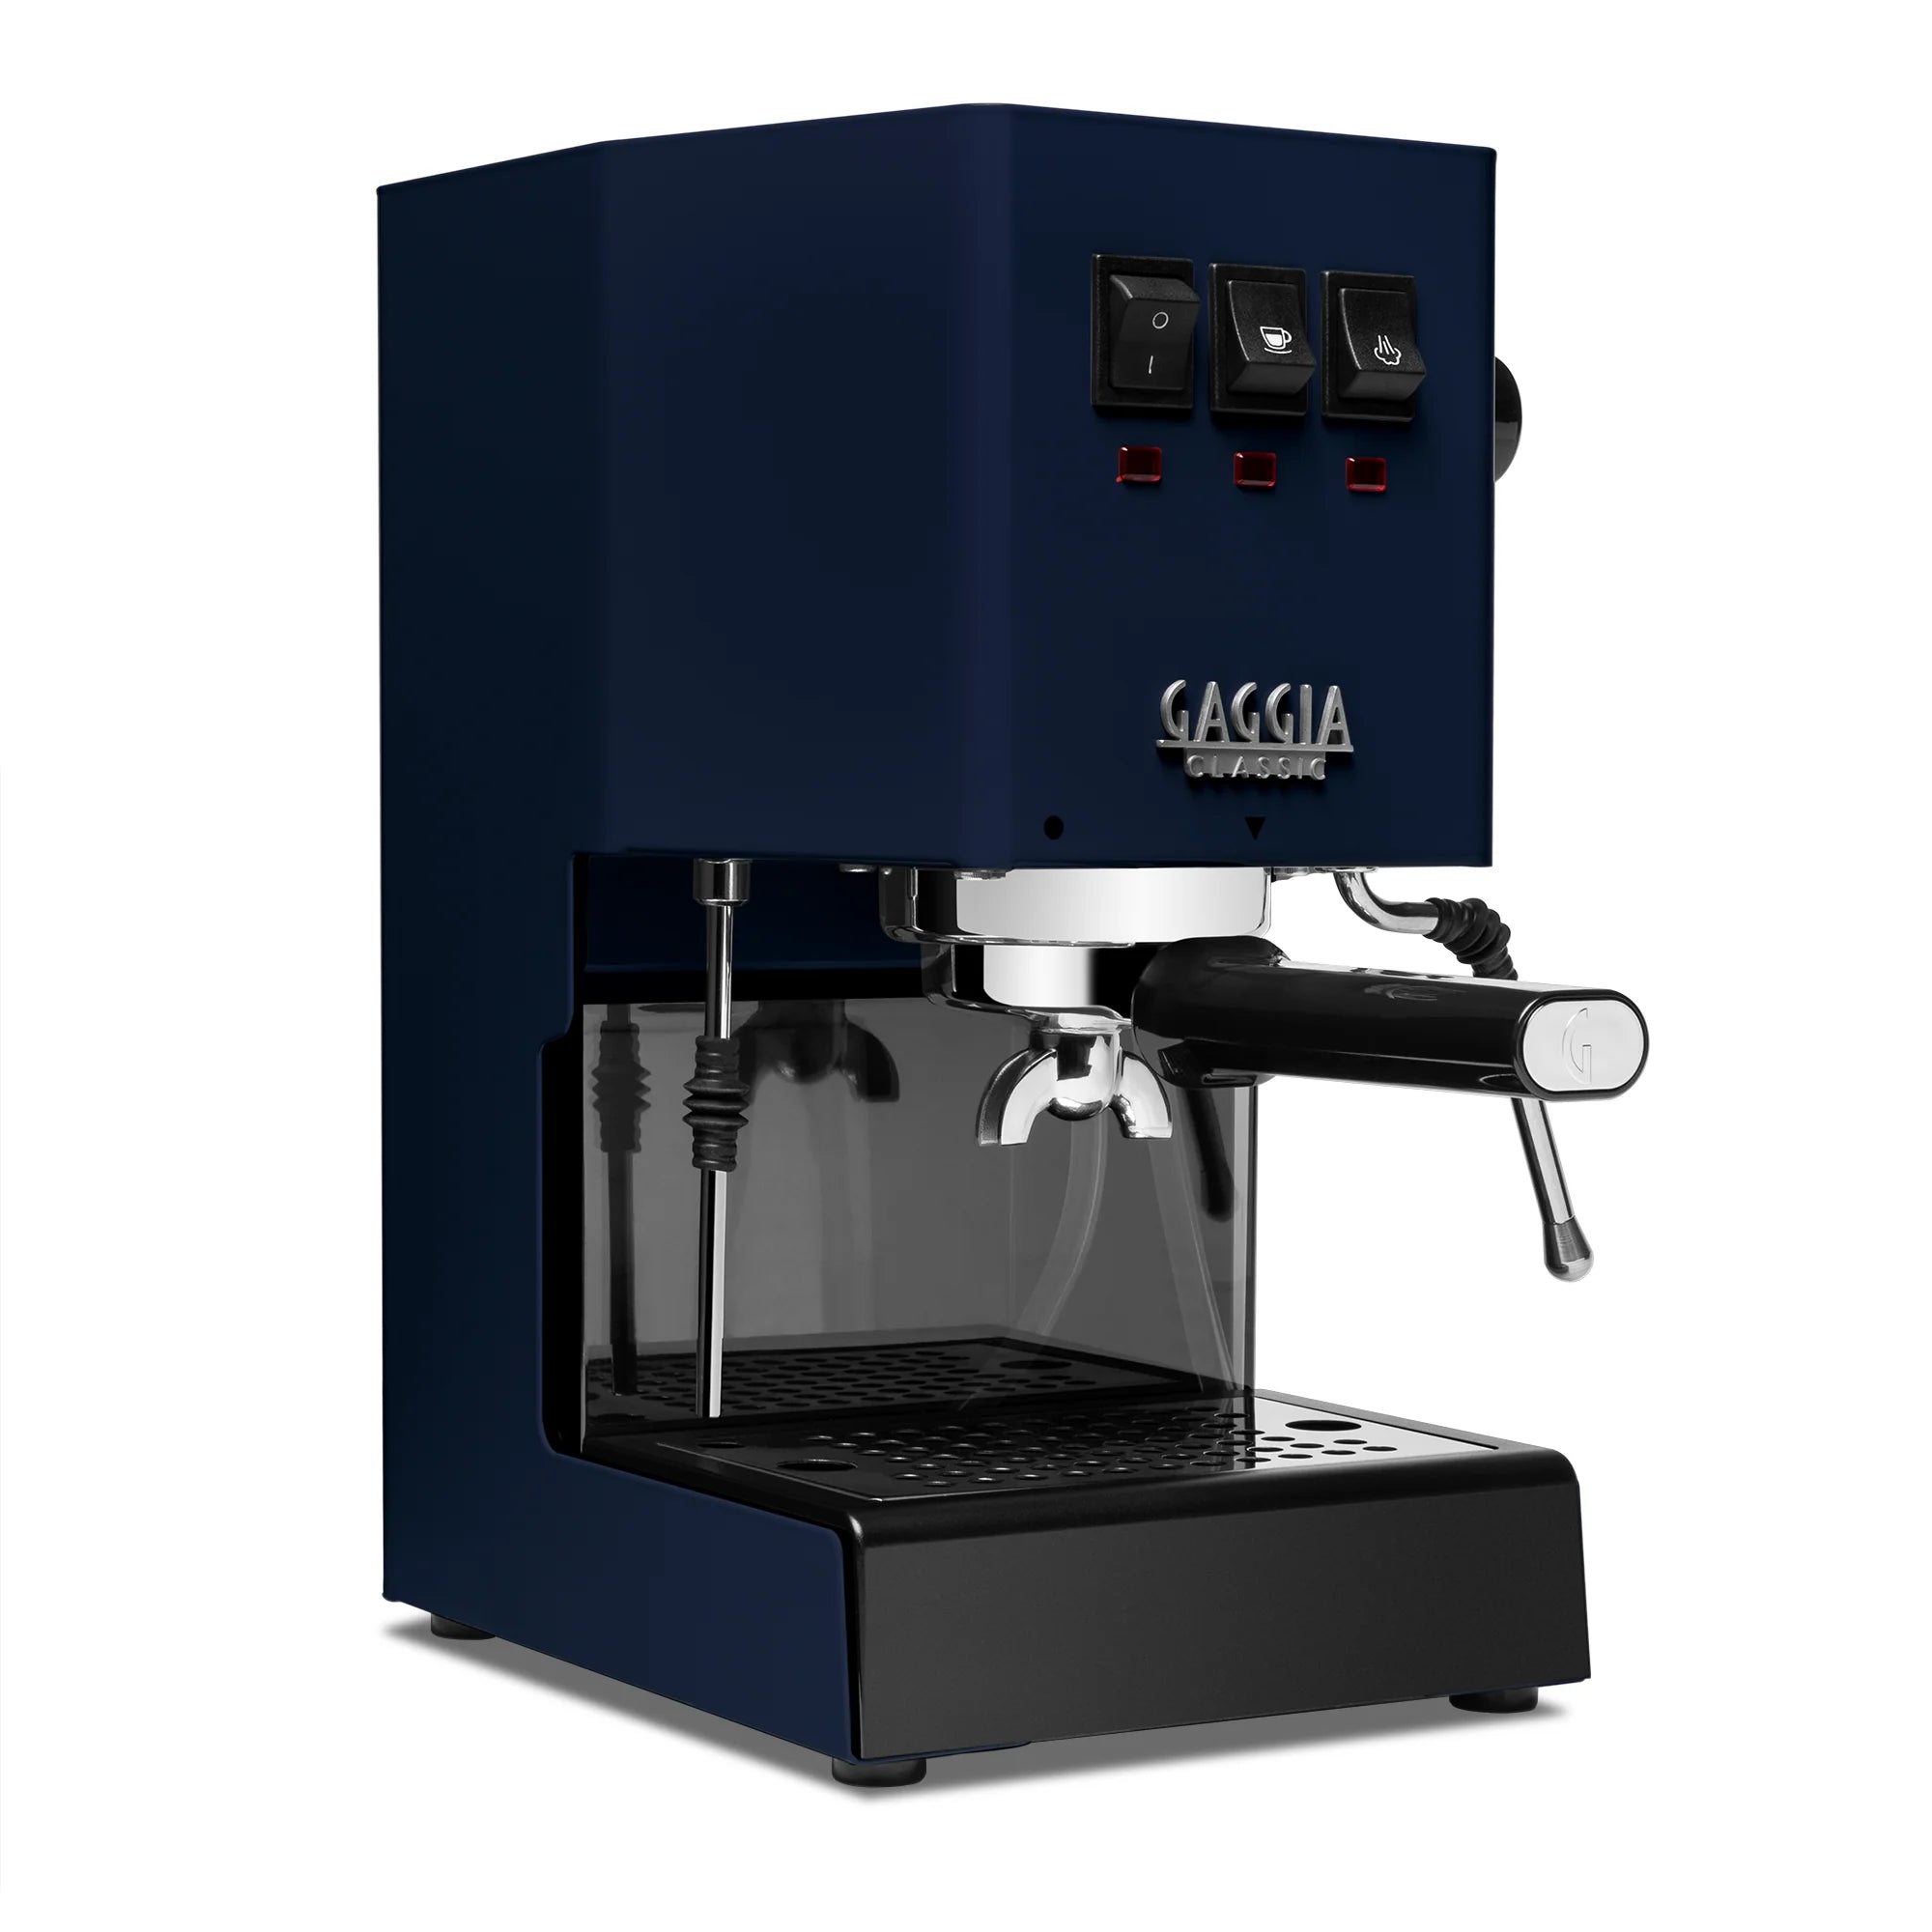 Gaggia Classic Evo Pro Espresso Machine in Industrial Grey